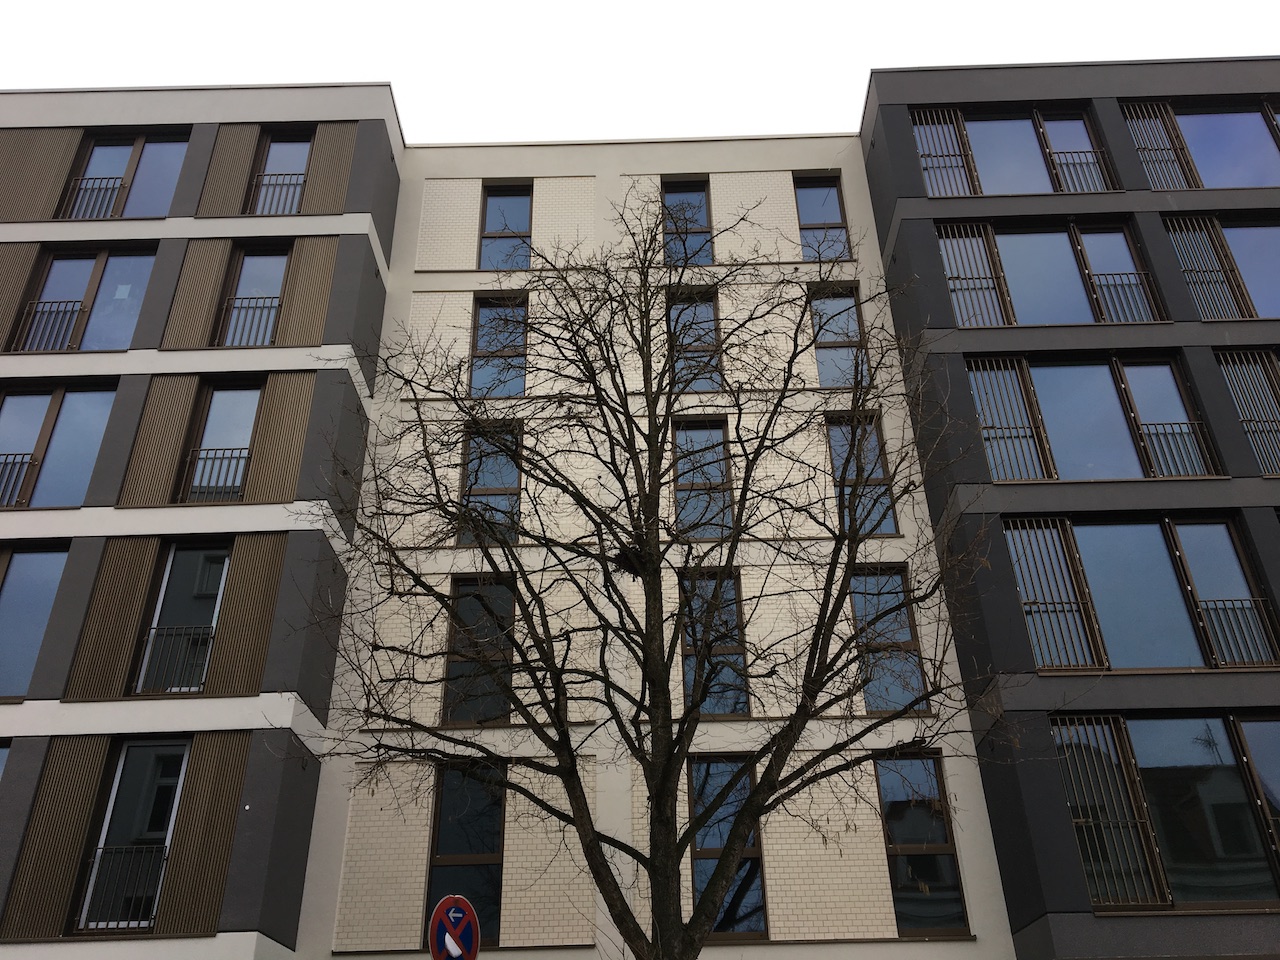 Fassade des Projekts "Lucente" mit den zwei Appartementhäusern in der Eppendorfer Landstraße 107/109